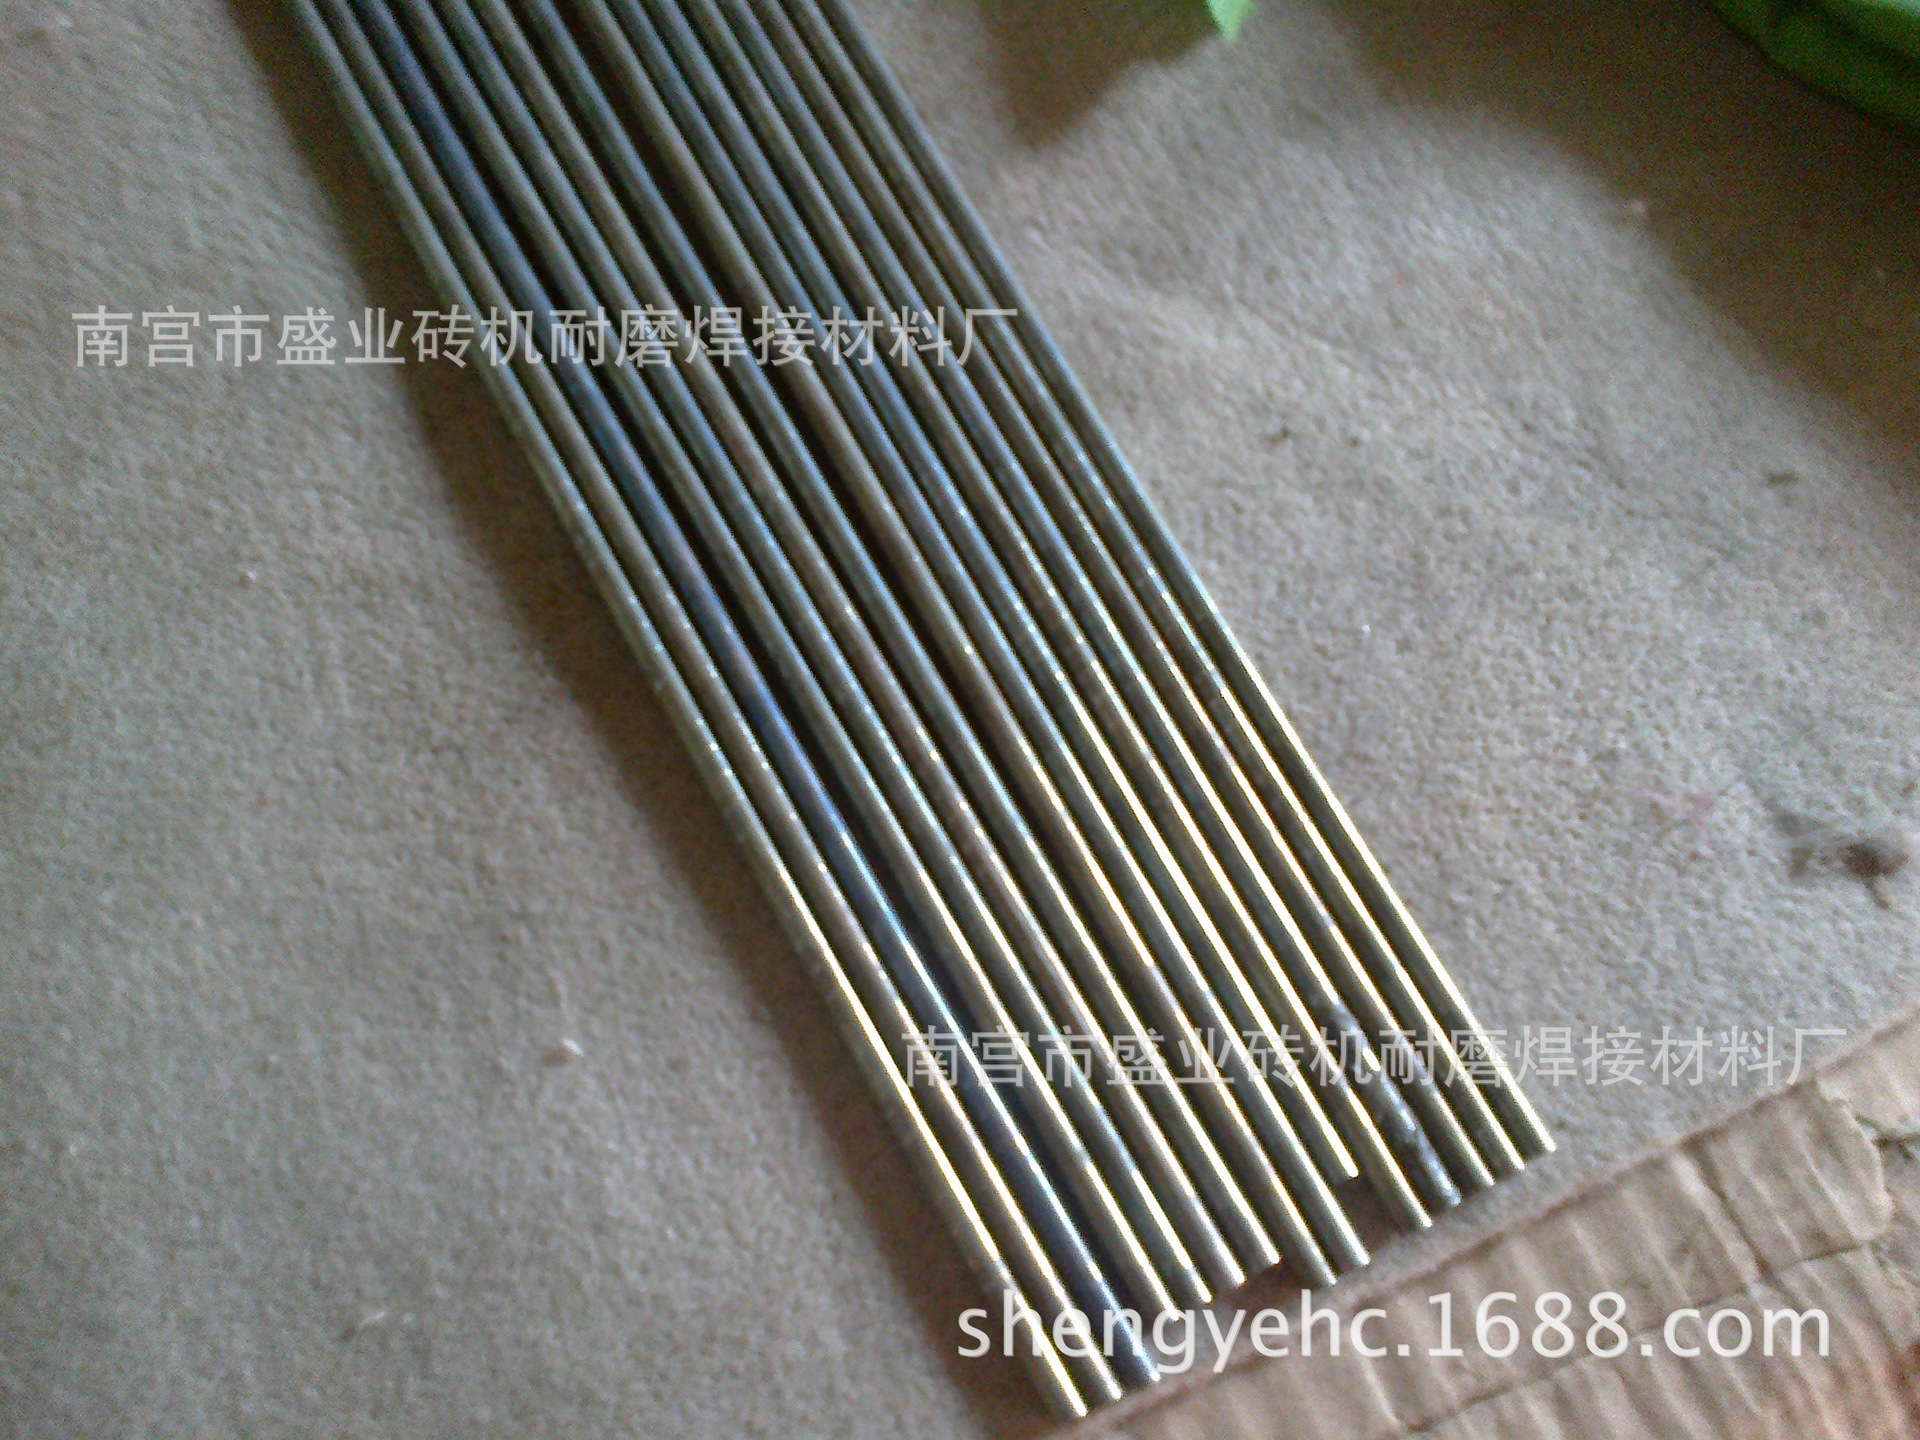 钴基焊丝HS111 高温高压阀门钴基焊丝 热剪切刀刃热锻模耐磨焊丝示例图1